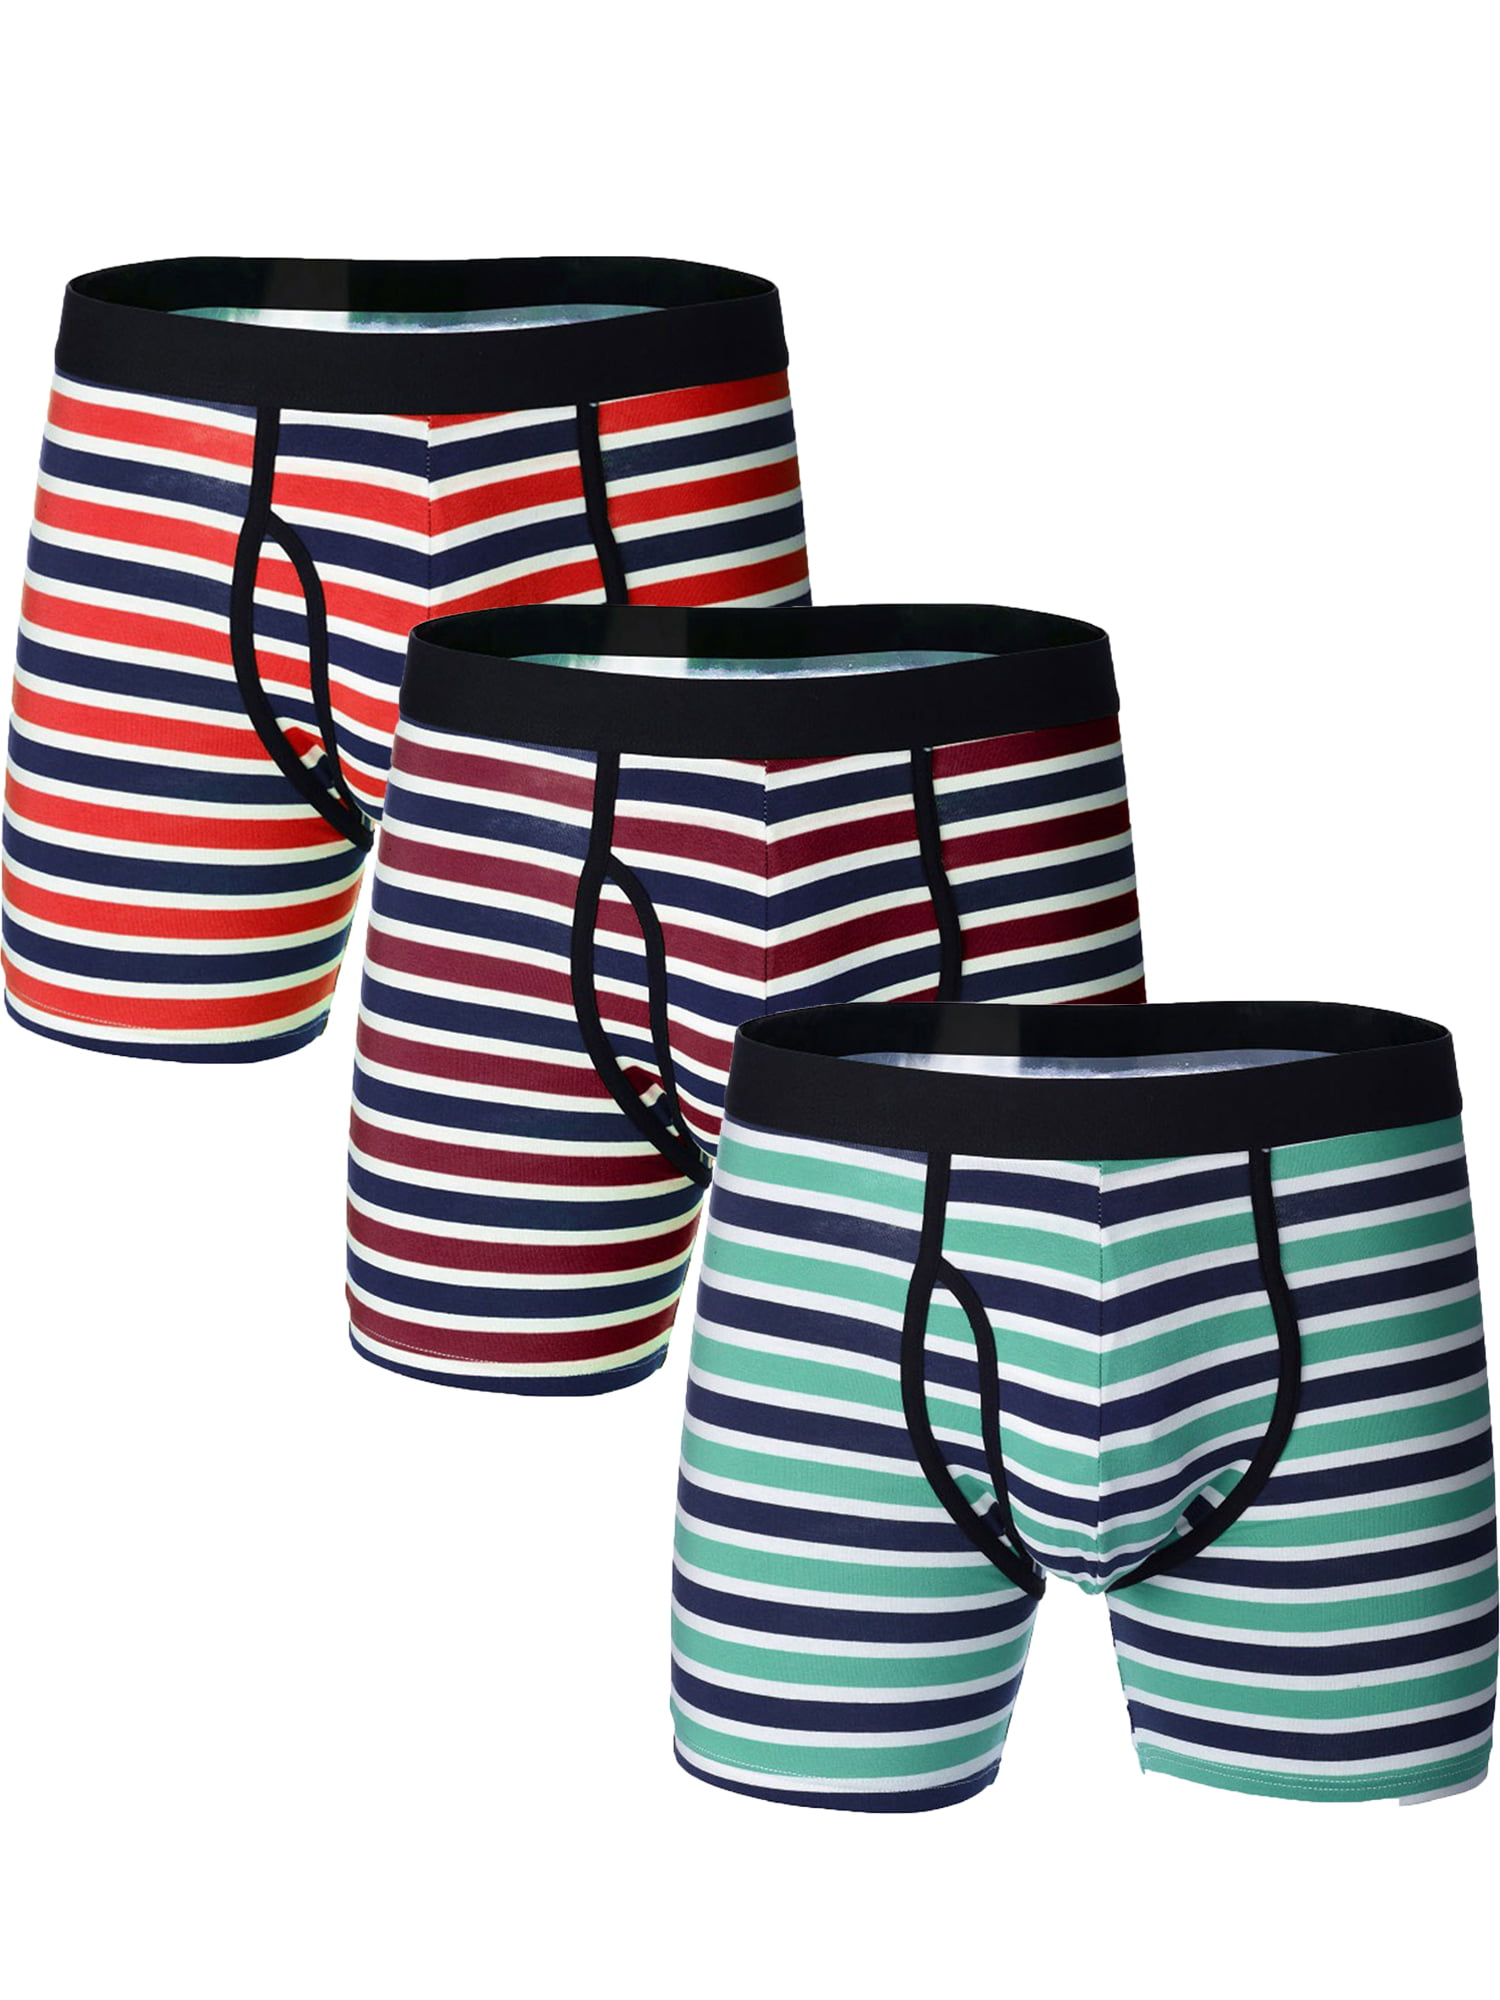 Pack of 3 Men New Stripe Boxer Shorts Pants Briefs Underwear 95% Cotton Boxers S M L XL 2XL